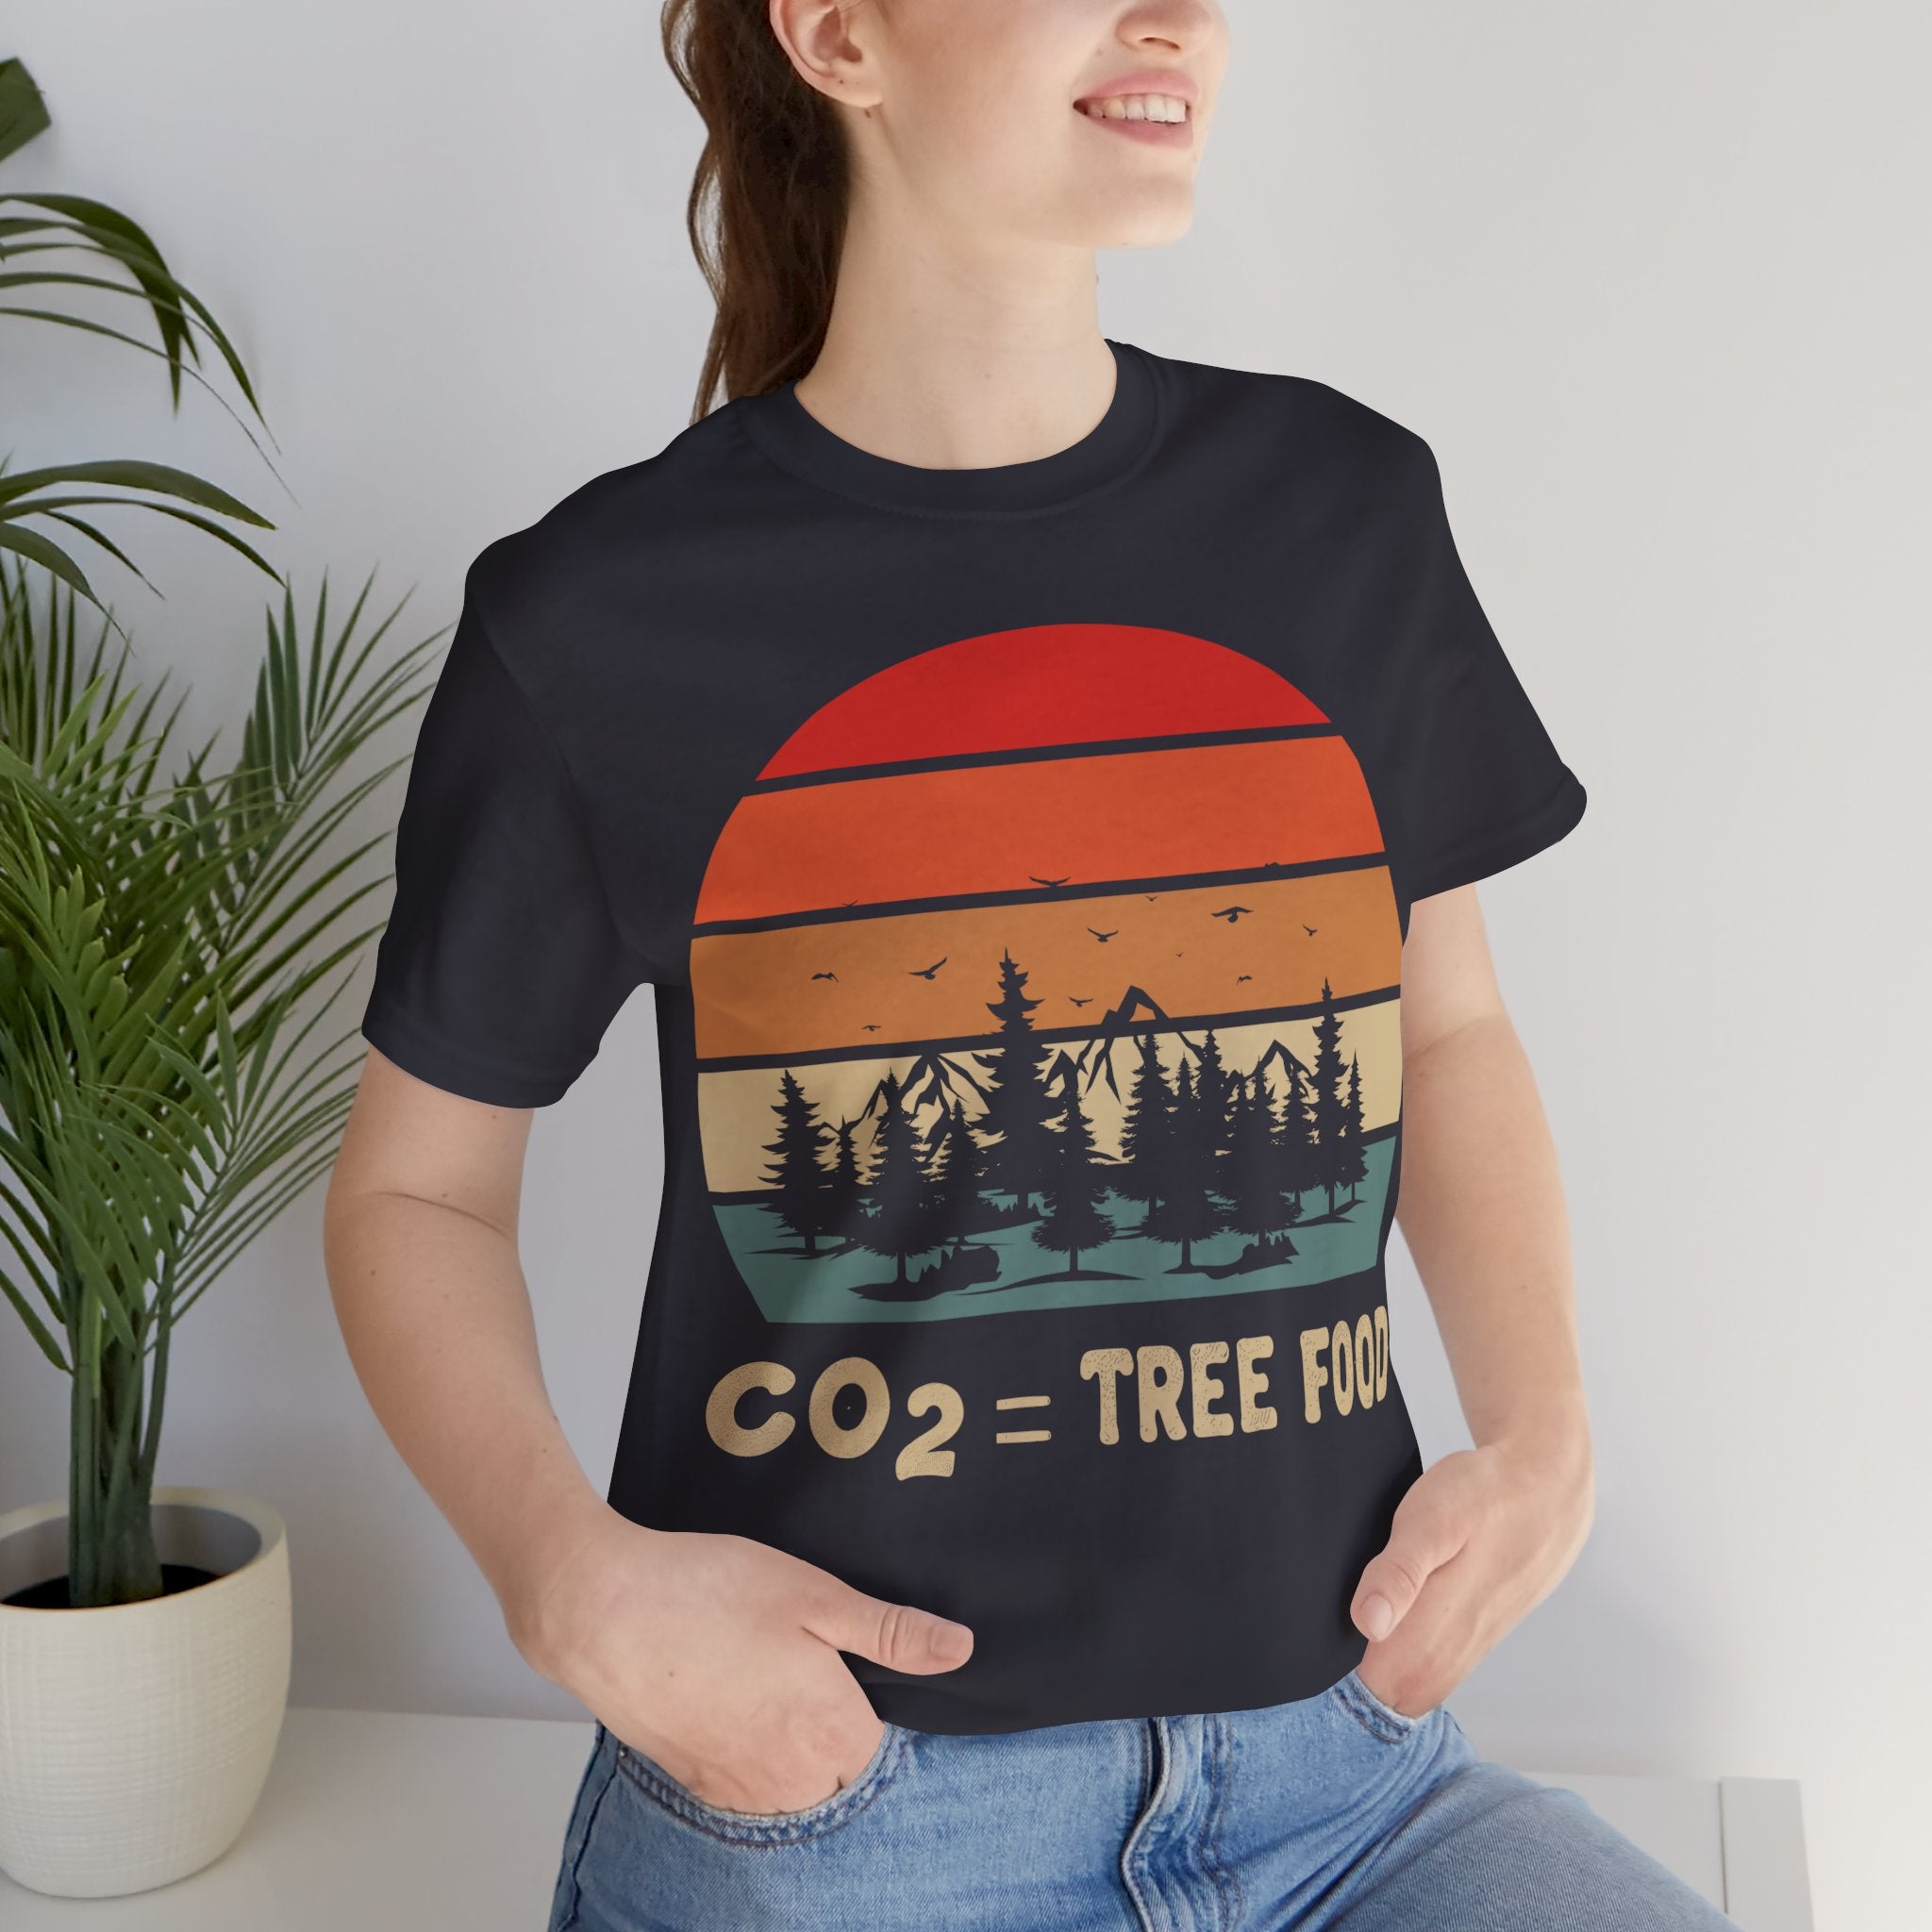 CO2 = Tree Food